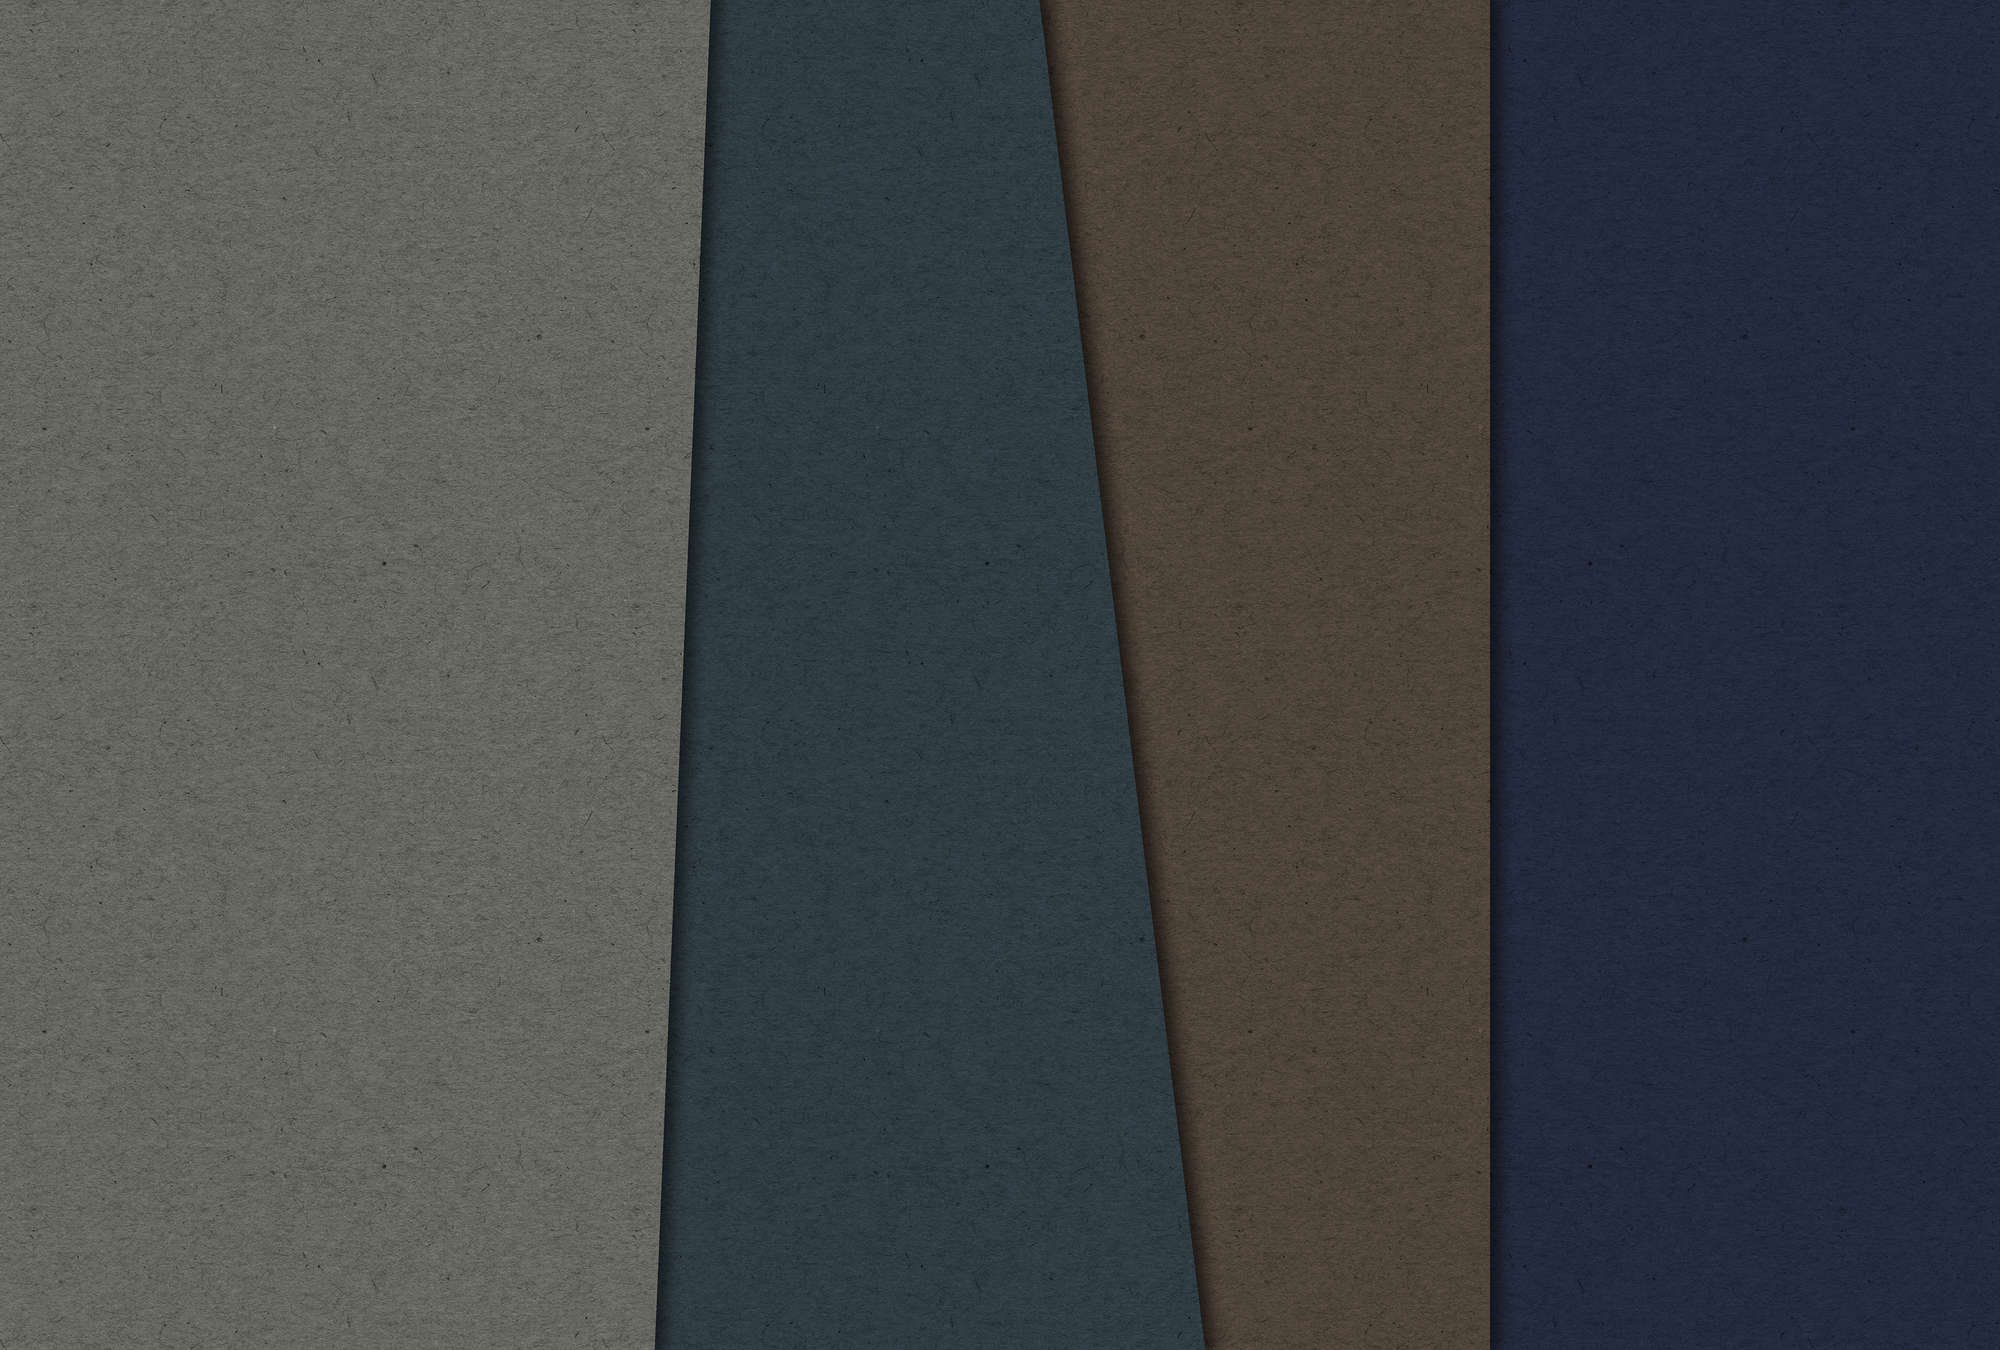             Layered Cardboard 2 - Papel pintado fotográfico en estructura de cartón con campos de color oscuro - Azul, Marrón | Vellón liso Premium
        